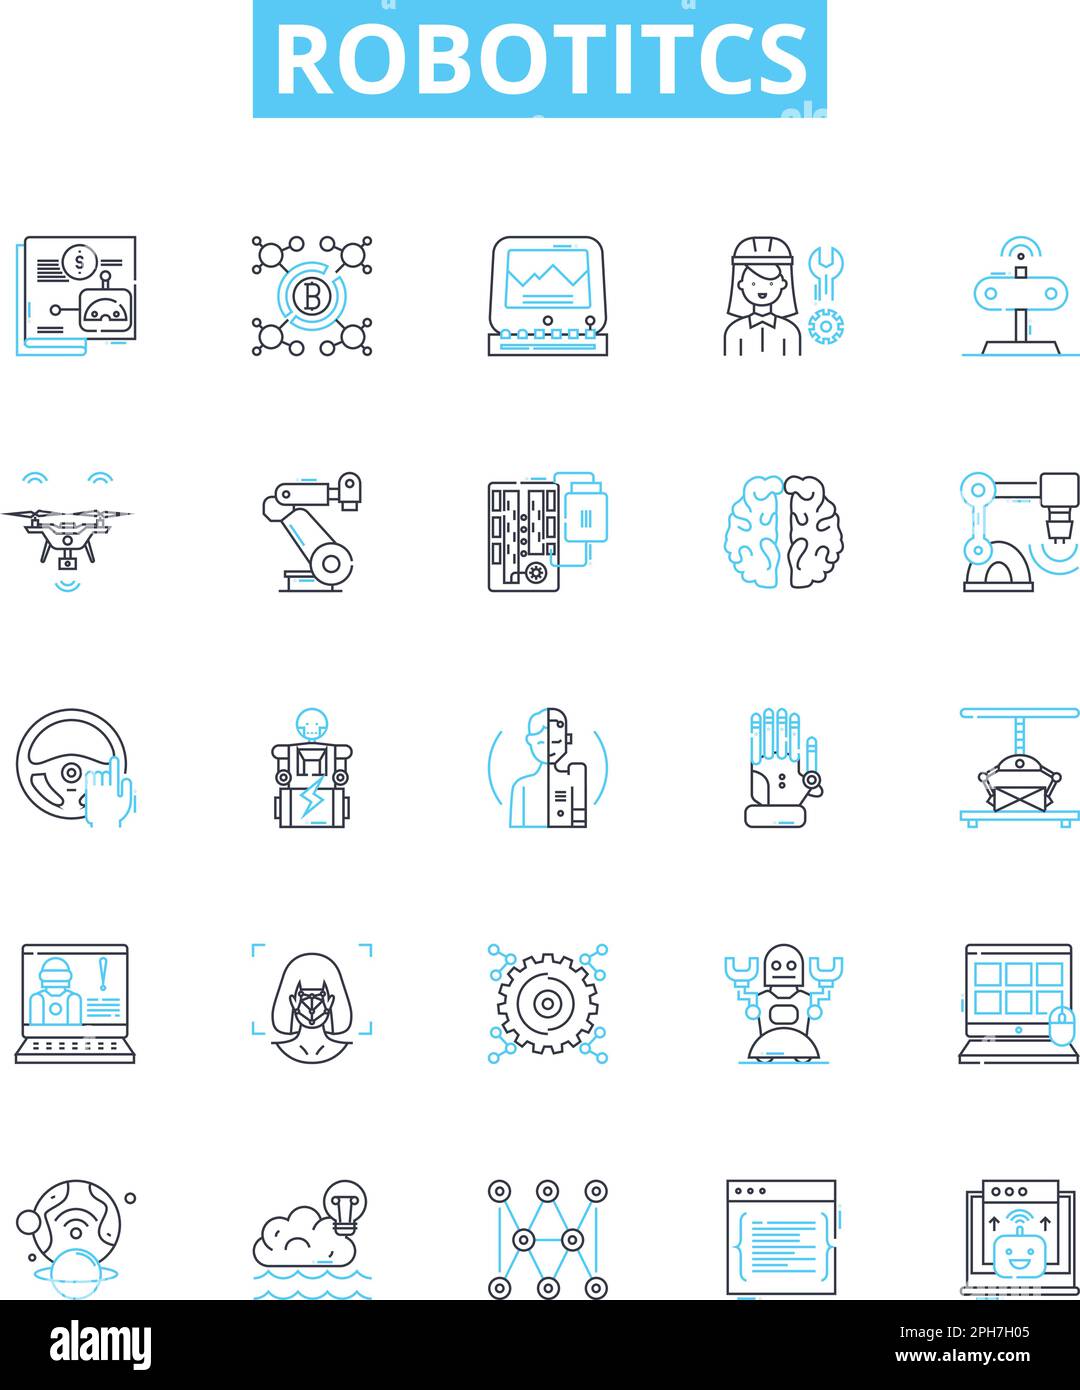 Robotitcs vector line icons set. Robotics, Automation, AI, Programmable, Machines, Autonomous, Networks illustration outline concept symbols and signs Stock Vector